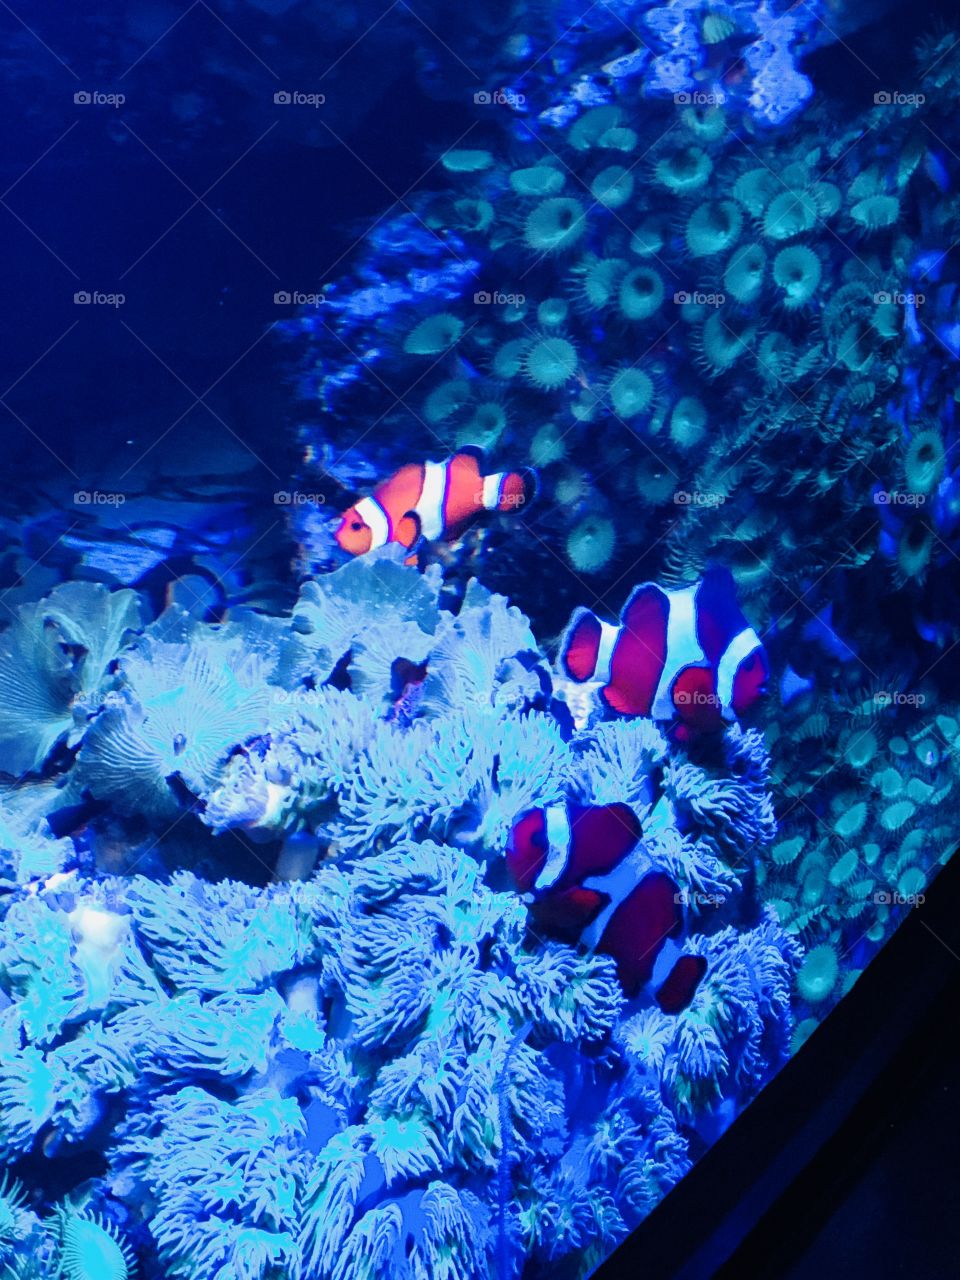 Nemo Found!